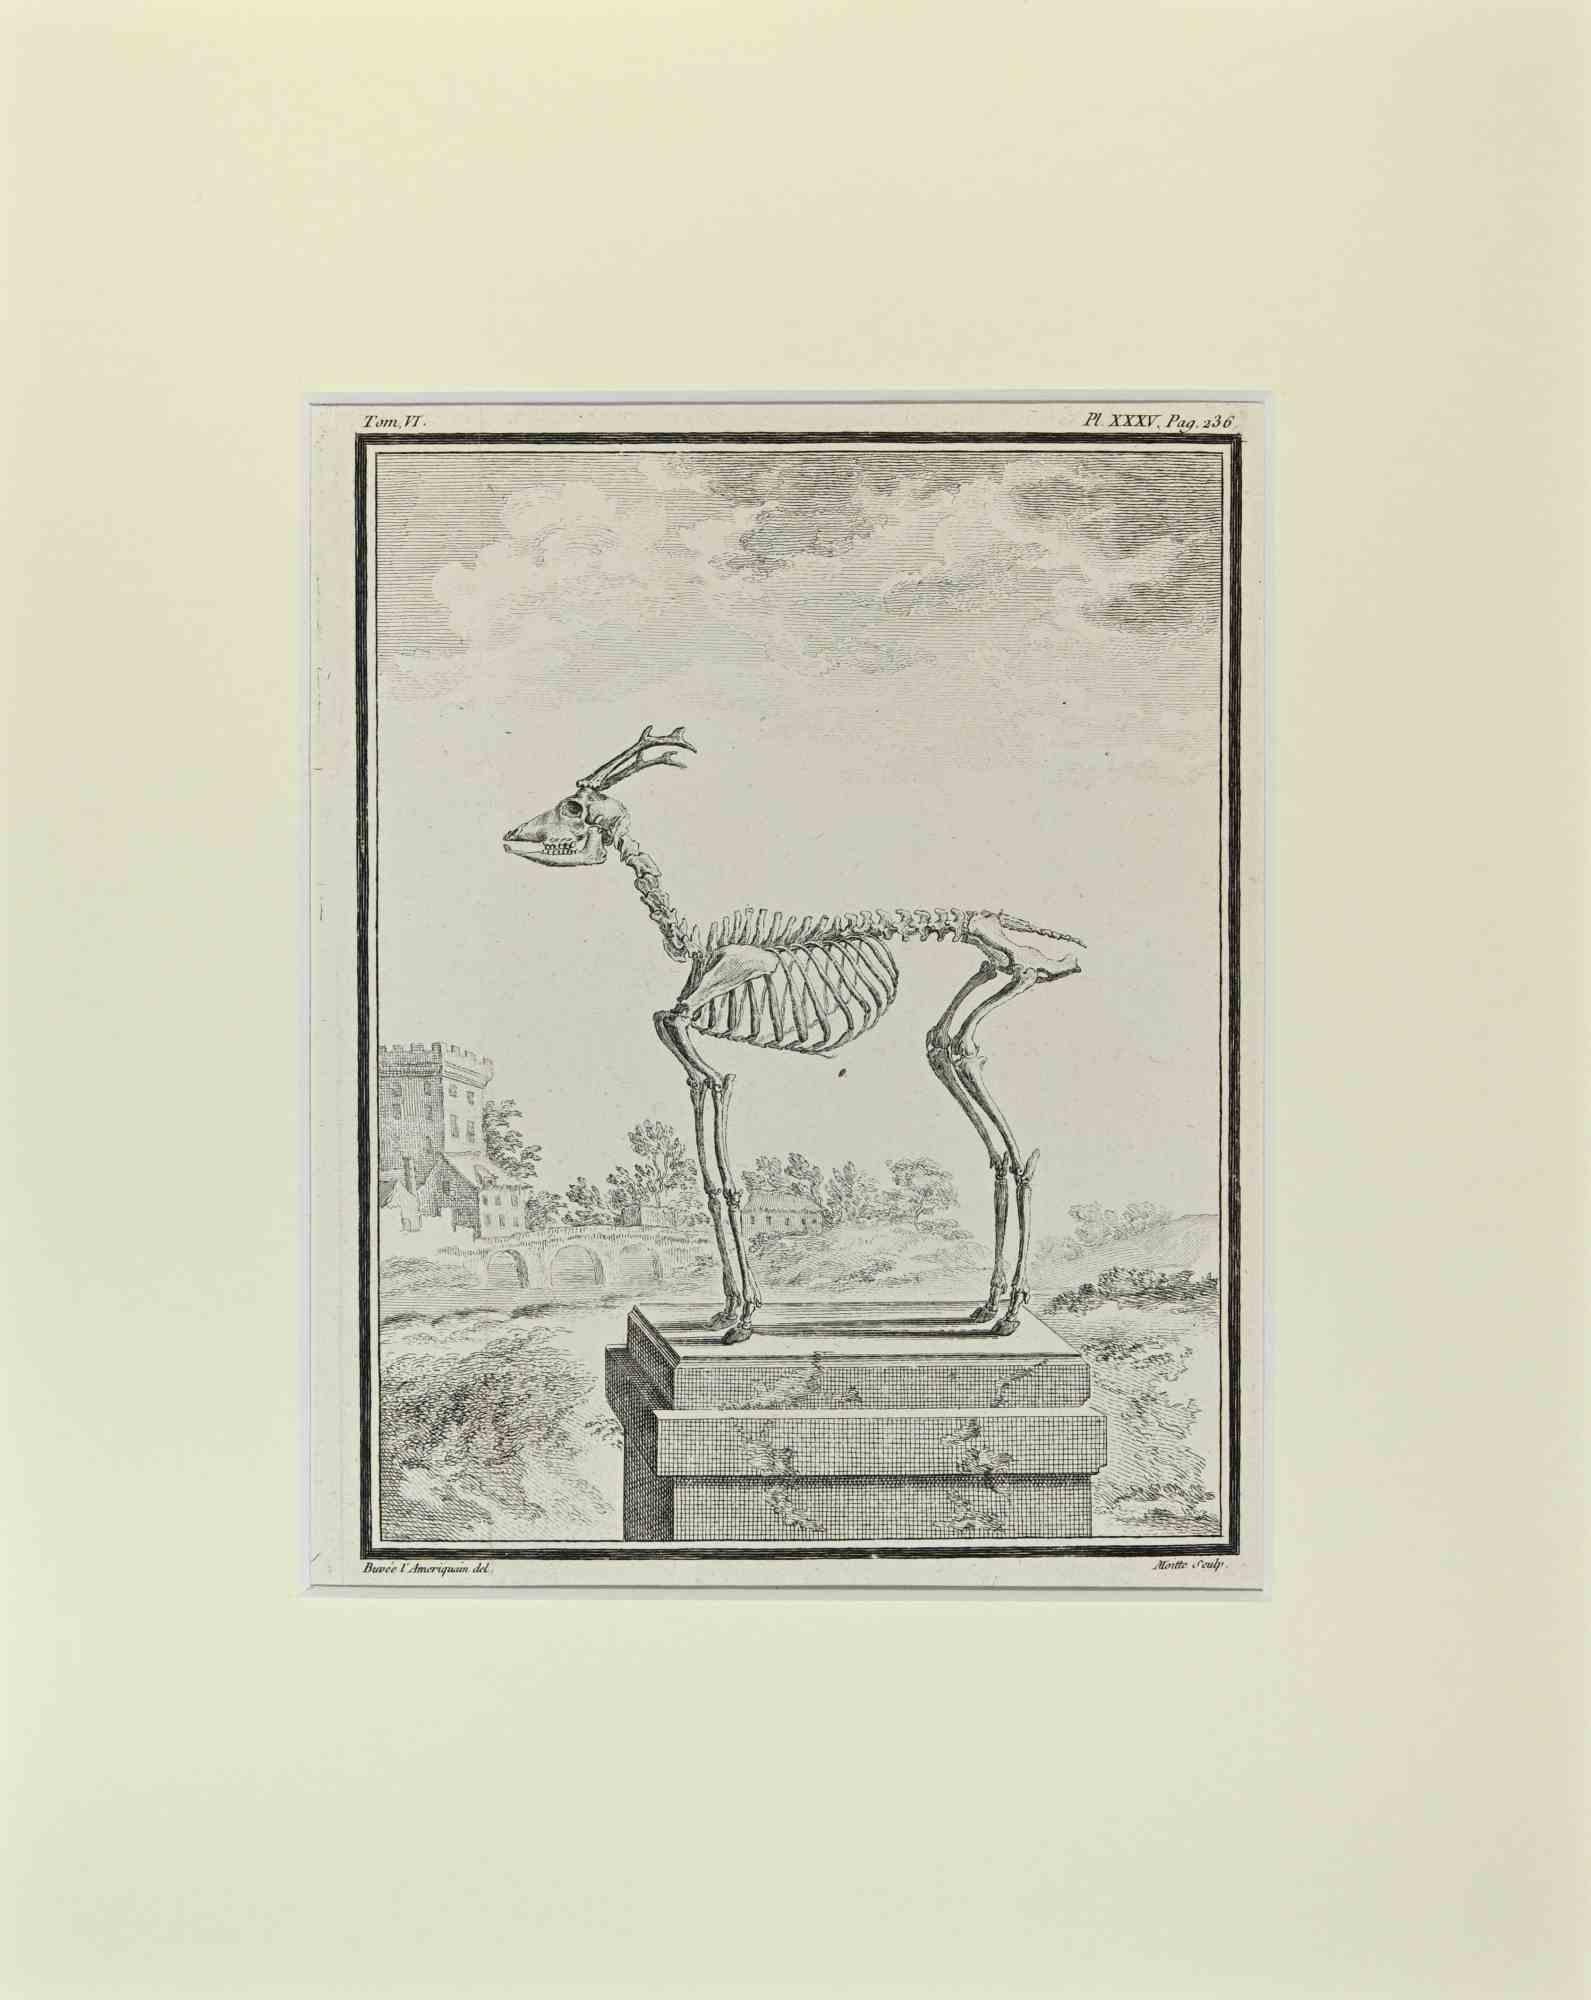 Le squelette de cerf est une œuvre d'art réalisée par Buvée l'Américain en 1771.  

Gravure à l'eau-forte B./W. sur papier ivoire. Signé sur la plaque dans la marge inférieure gauche.

L'œuvre est collée sur du carton. Dimensions totales : 35x28